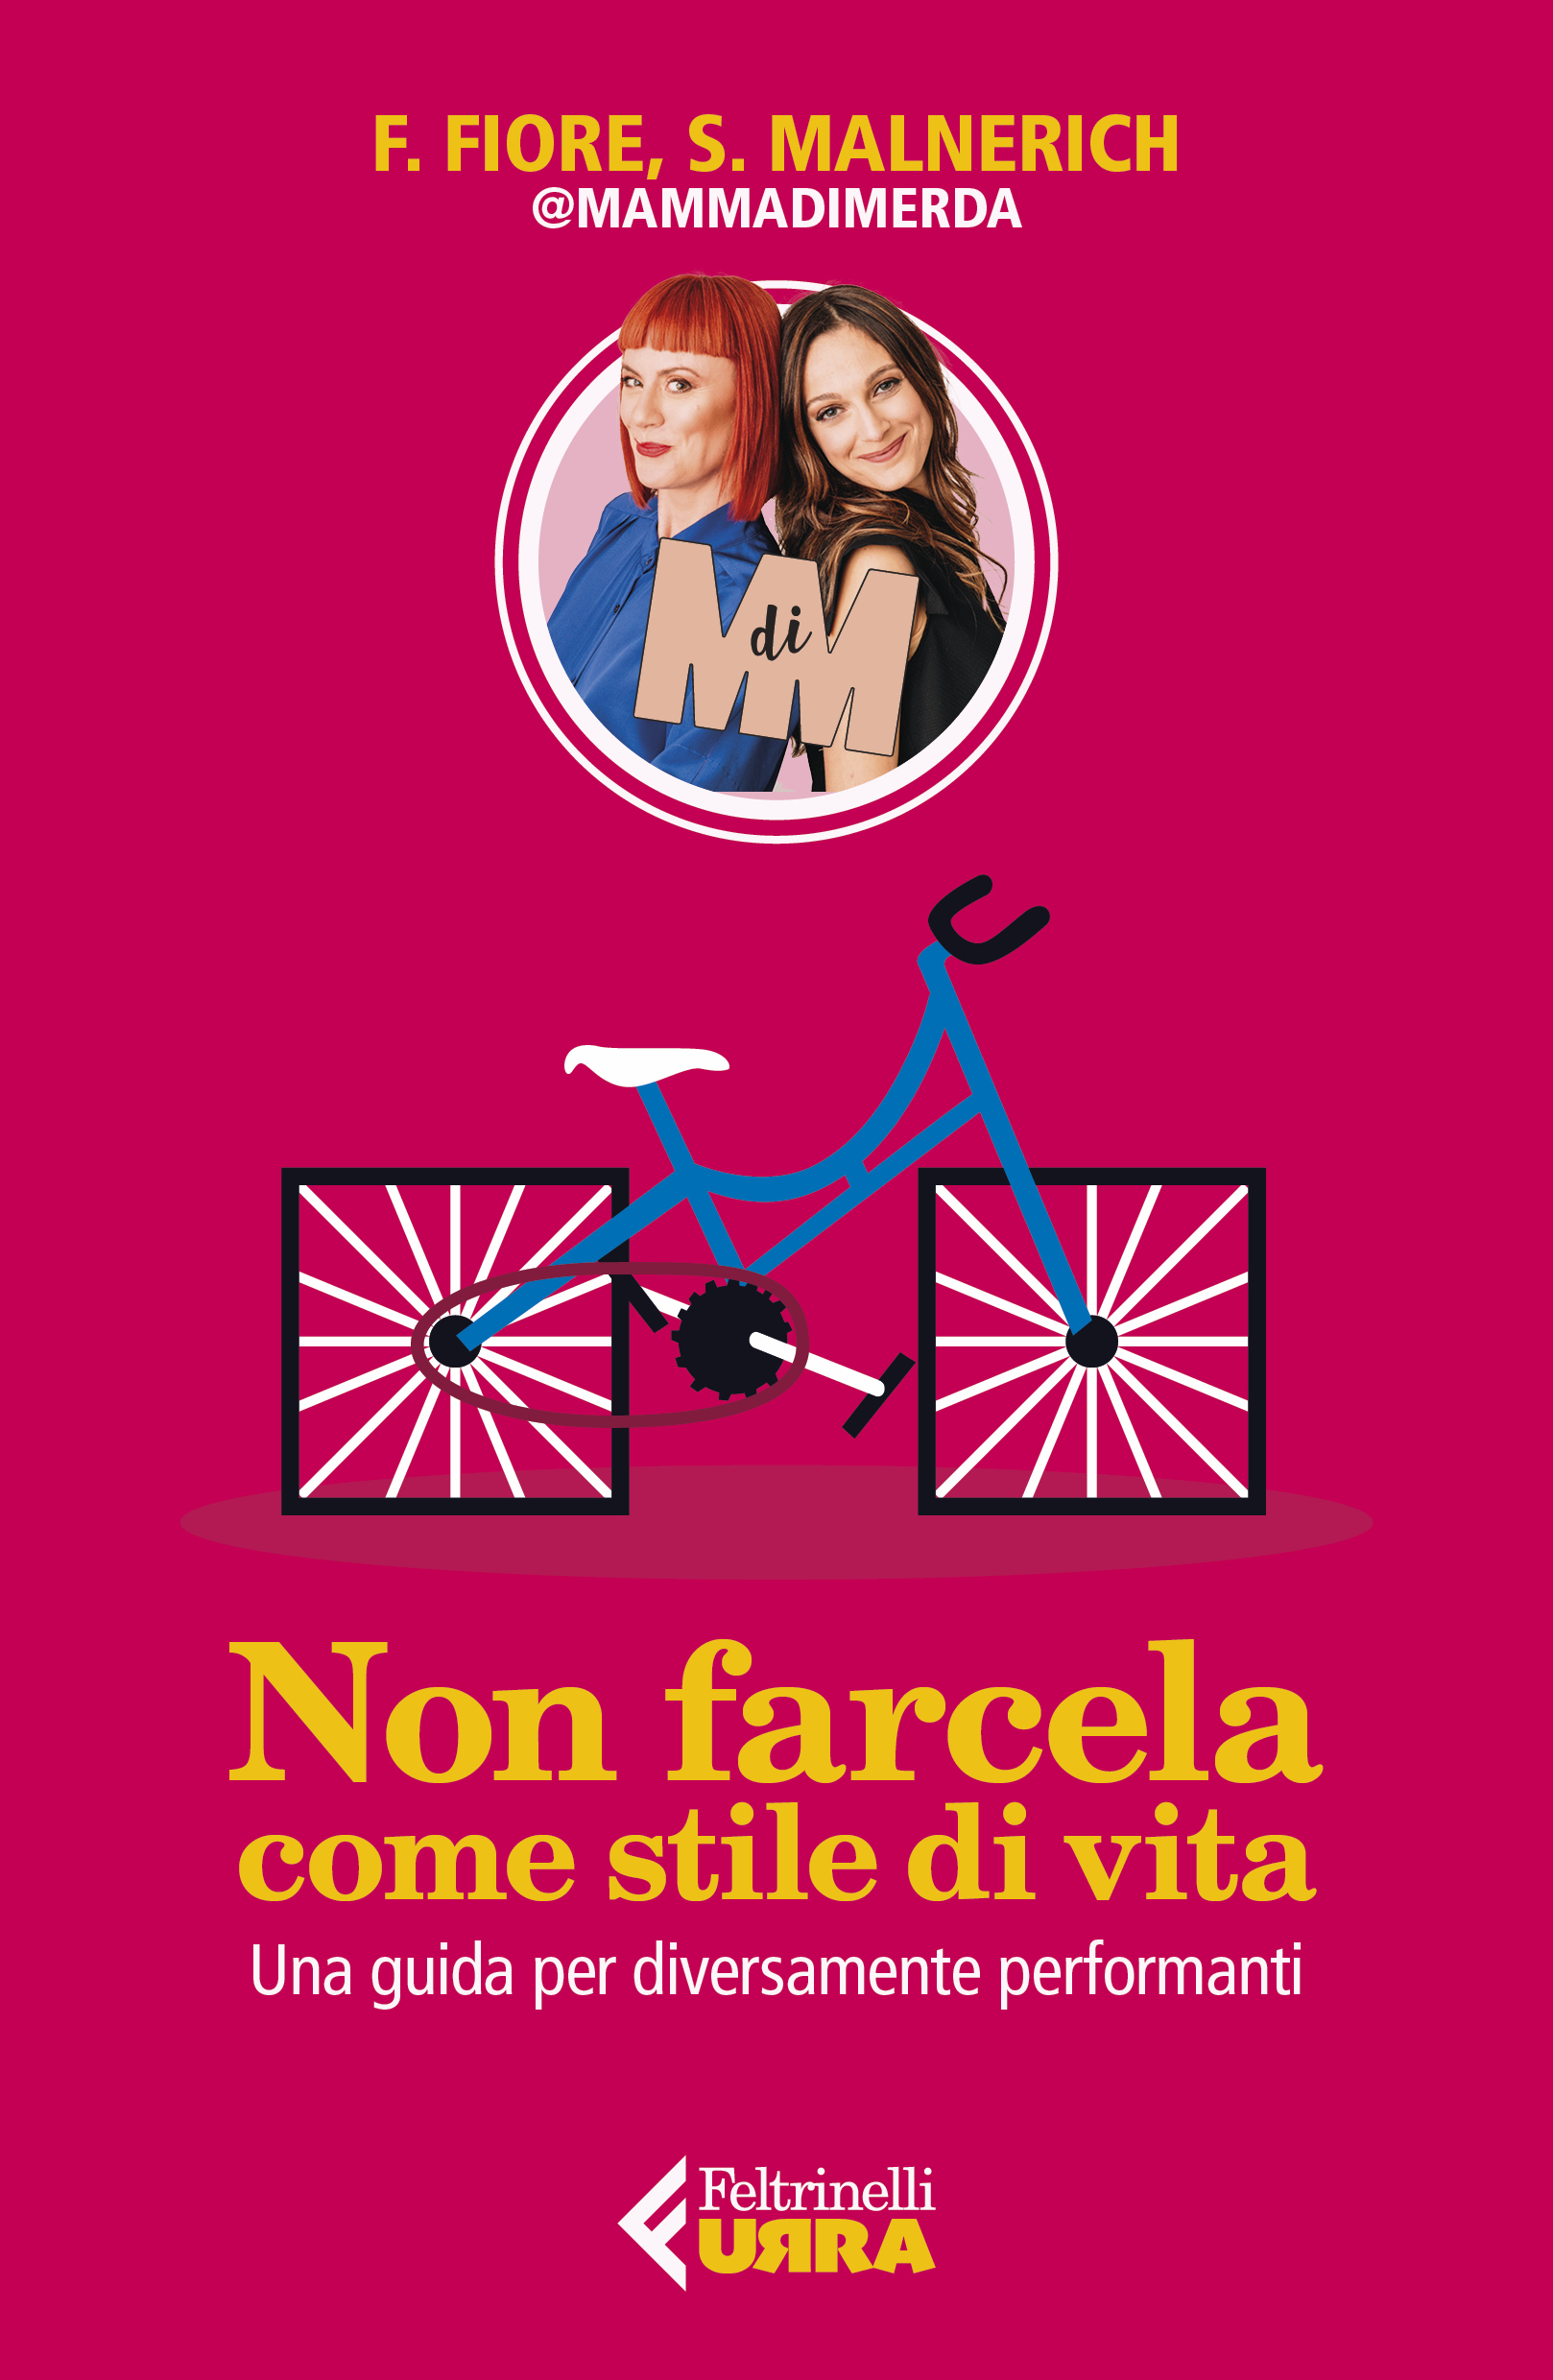 Al momento stai visualizzando Francesca e Sarah, meglio conosciute sul web come Mammadimerda, mercoledì 6 luglio al Visionario di Udine per presentare il loro nuovo libro “Non farcela come stile di vita”